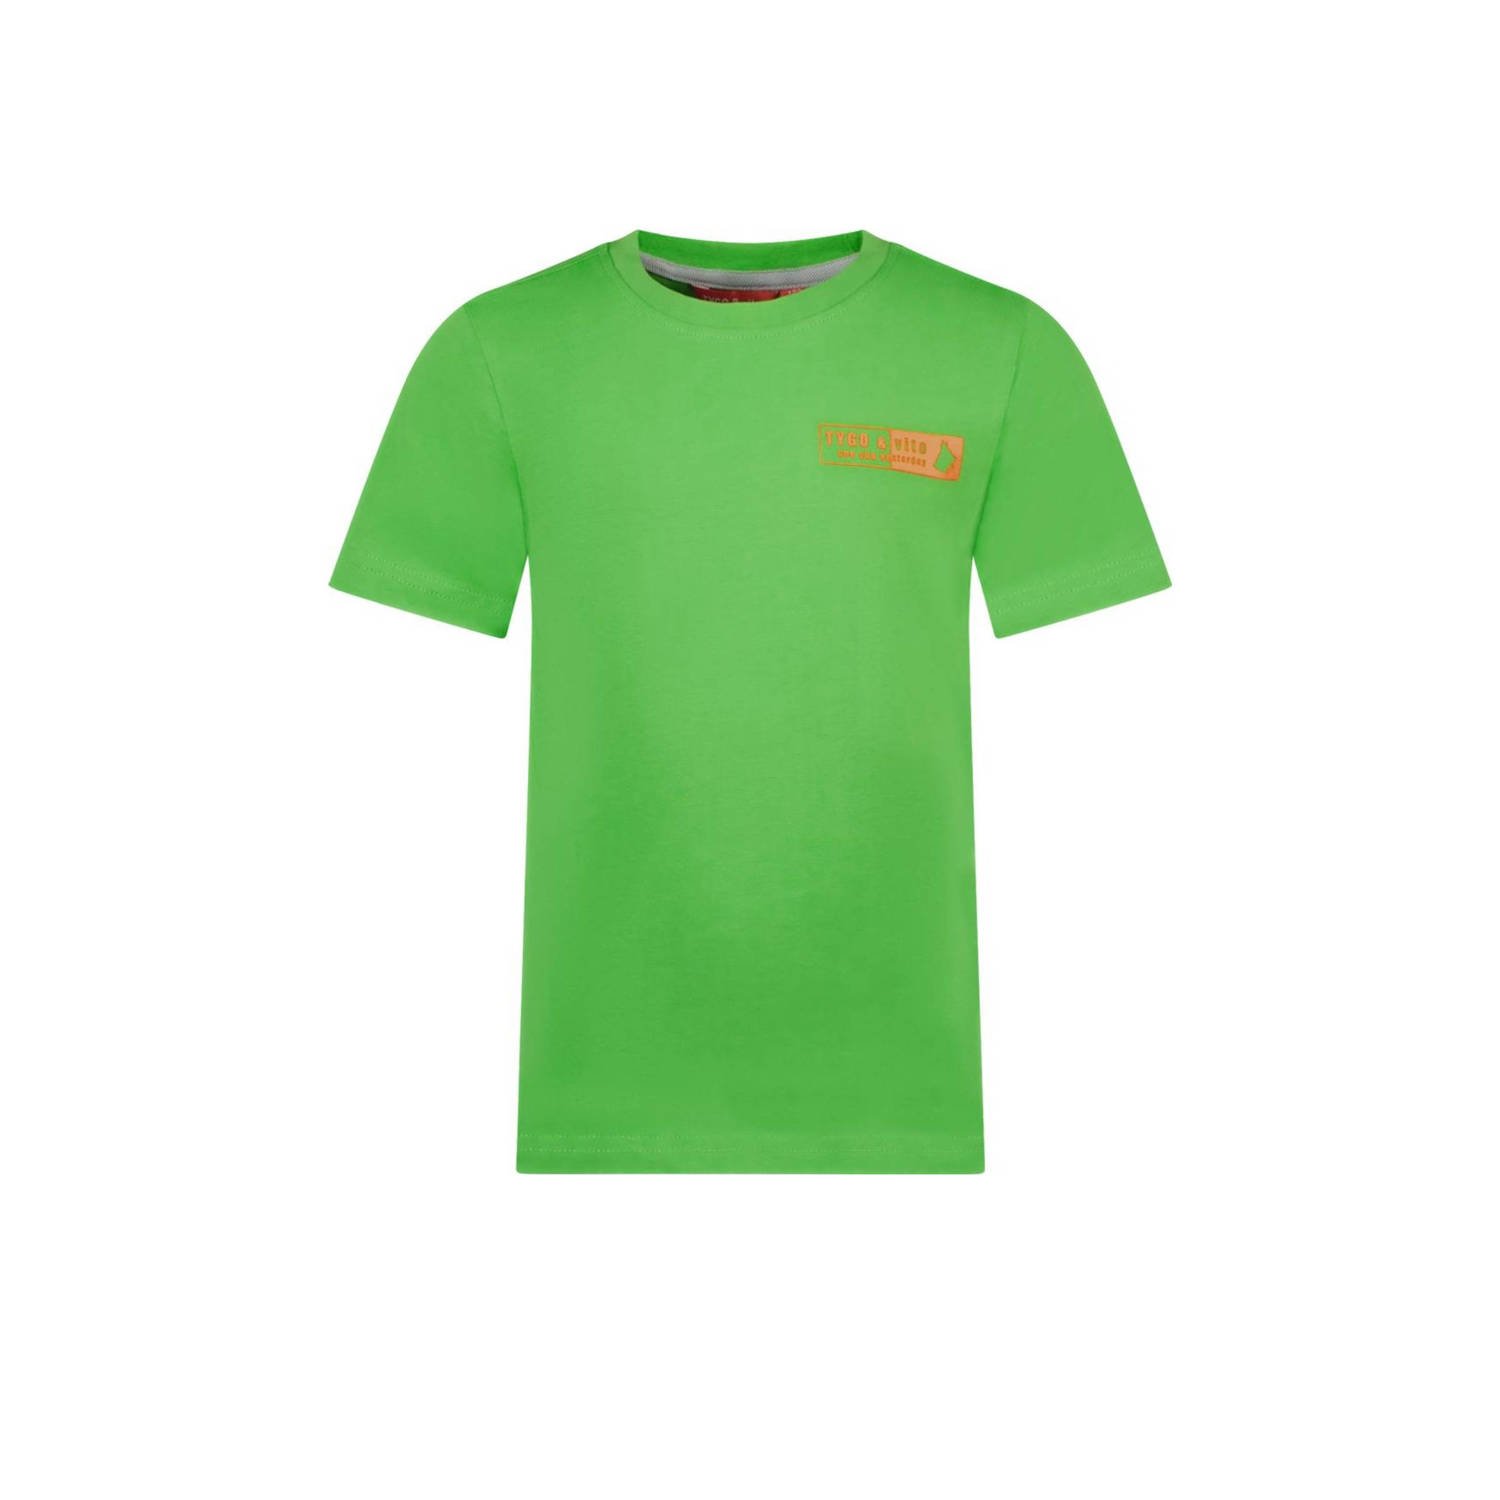 TYGO & vito T-shirt Tijn met printopdruk neongroen